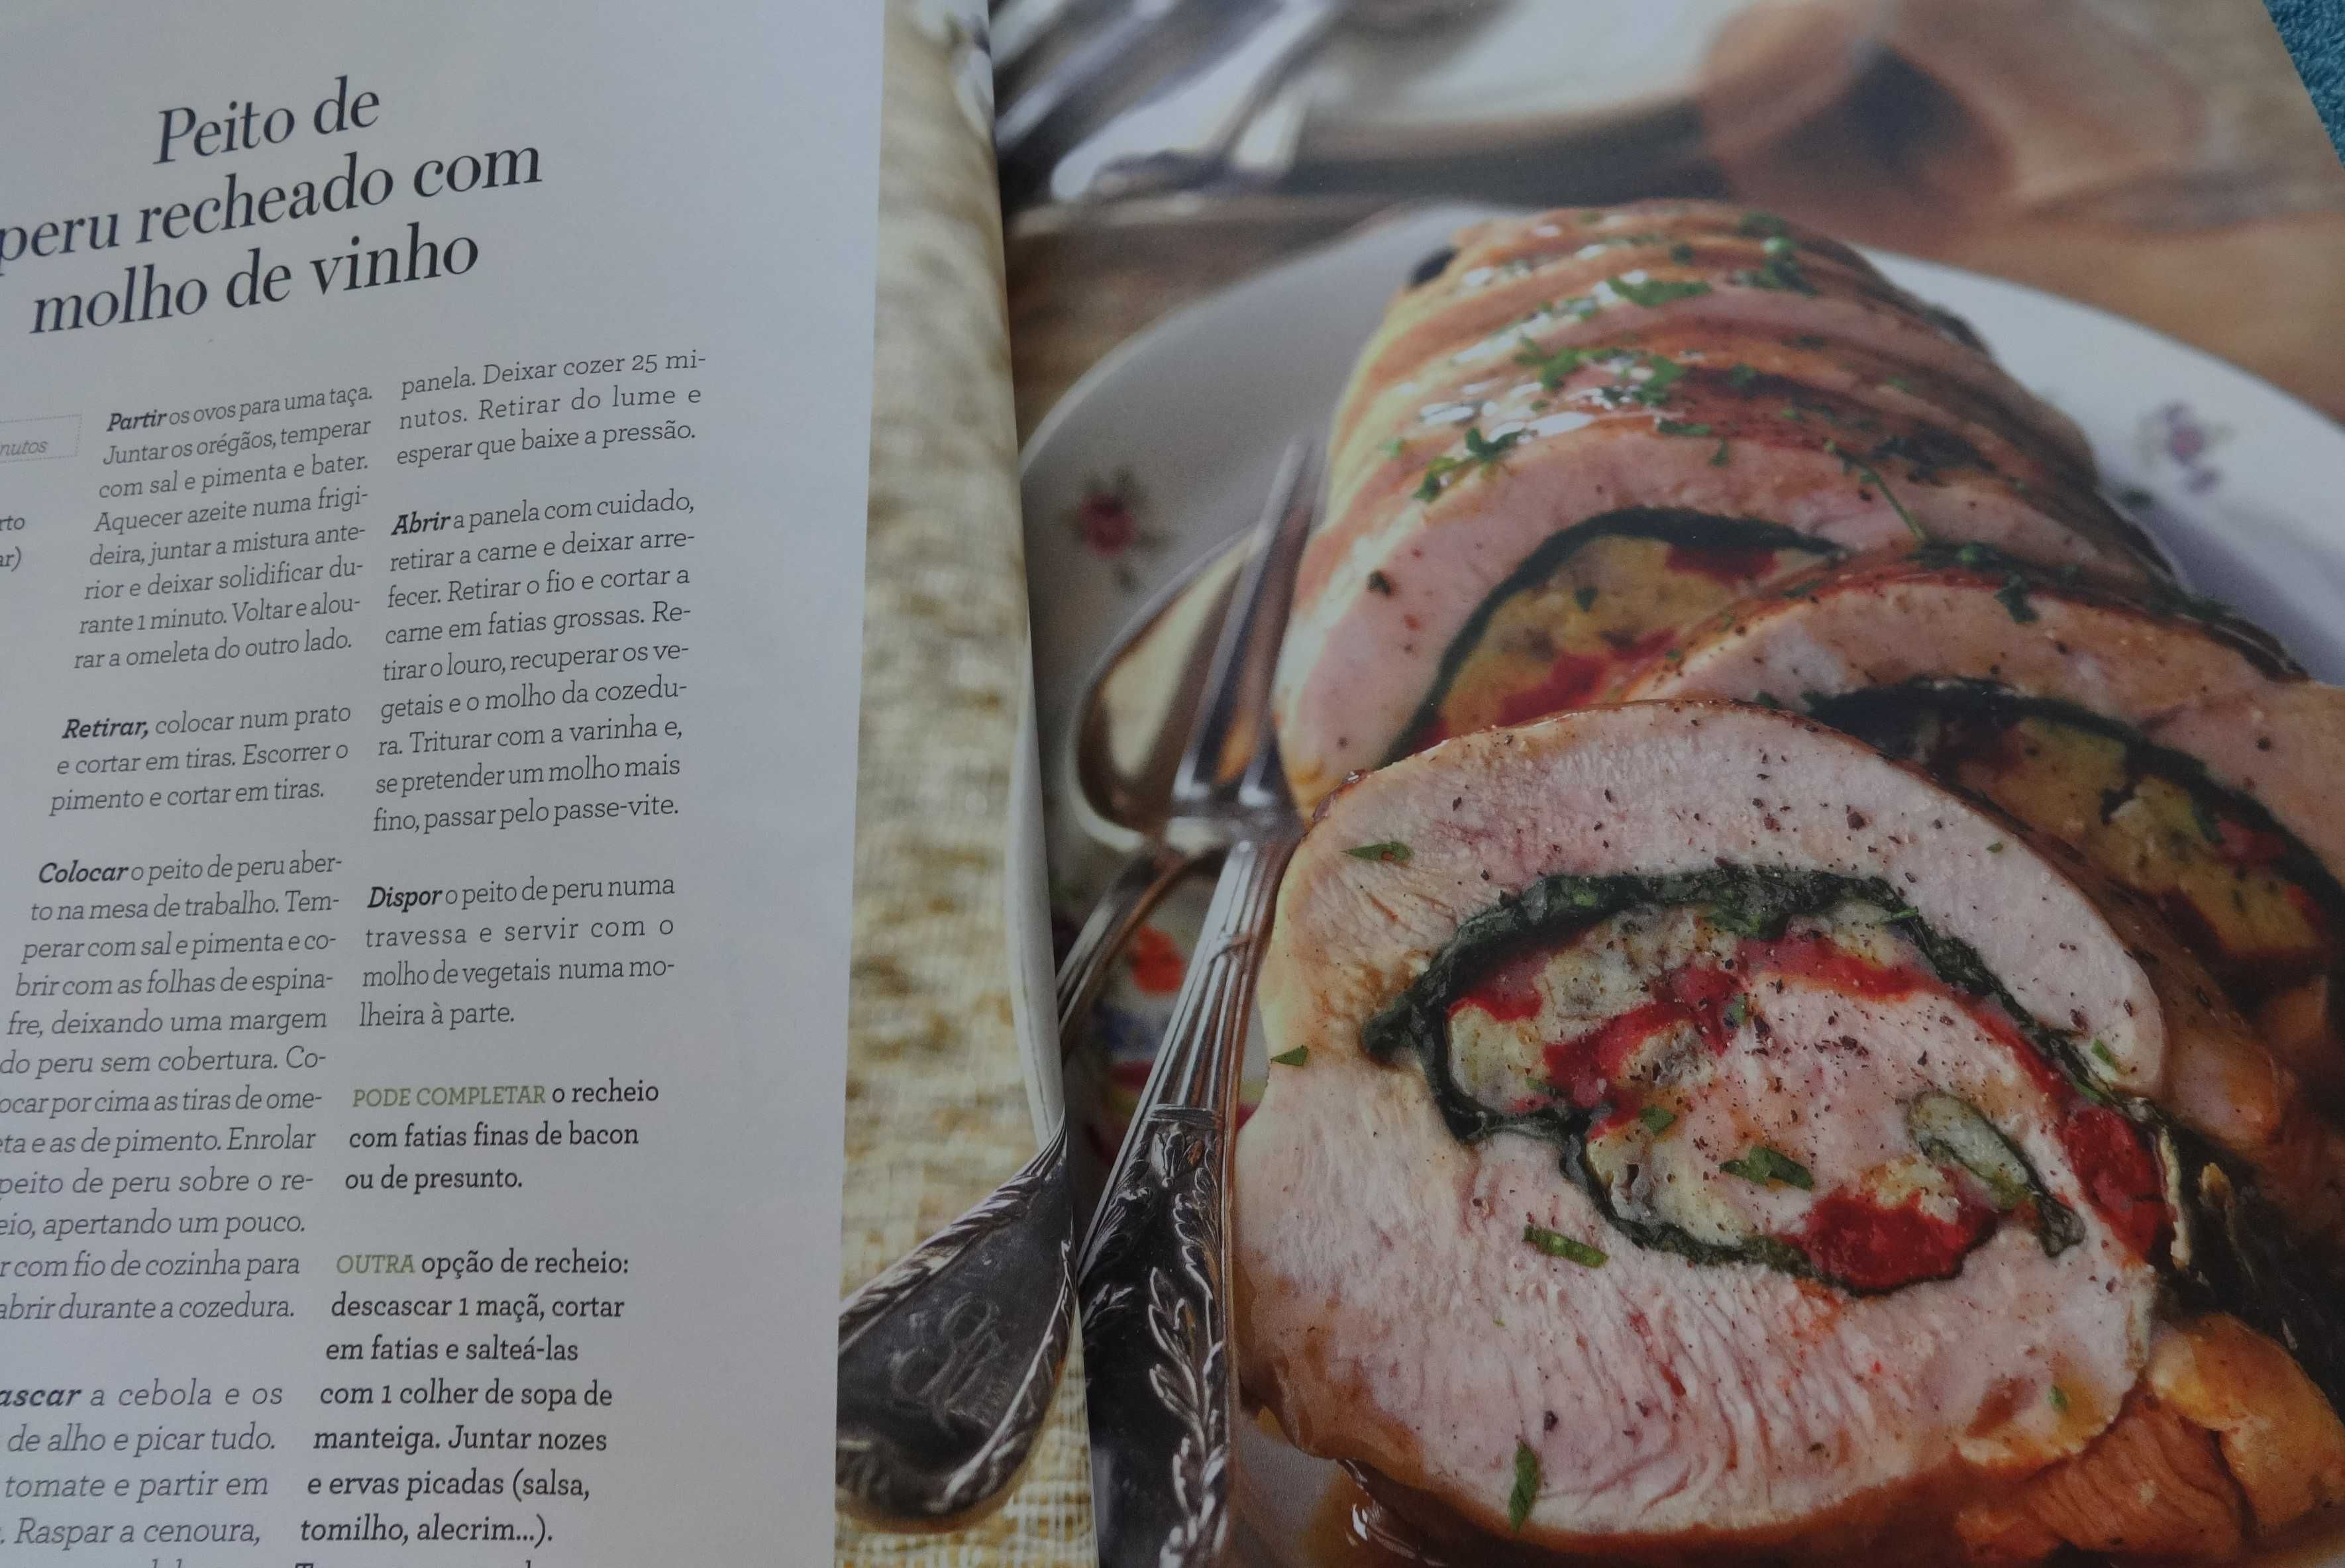 Revista Culinária “Cozinha Fácil”